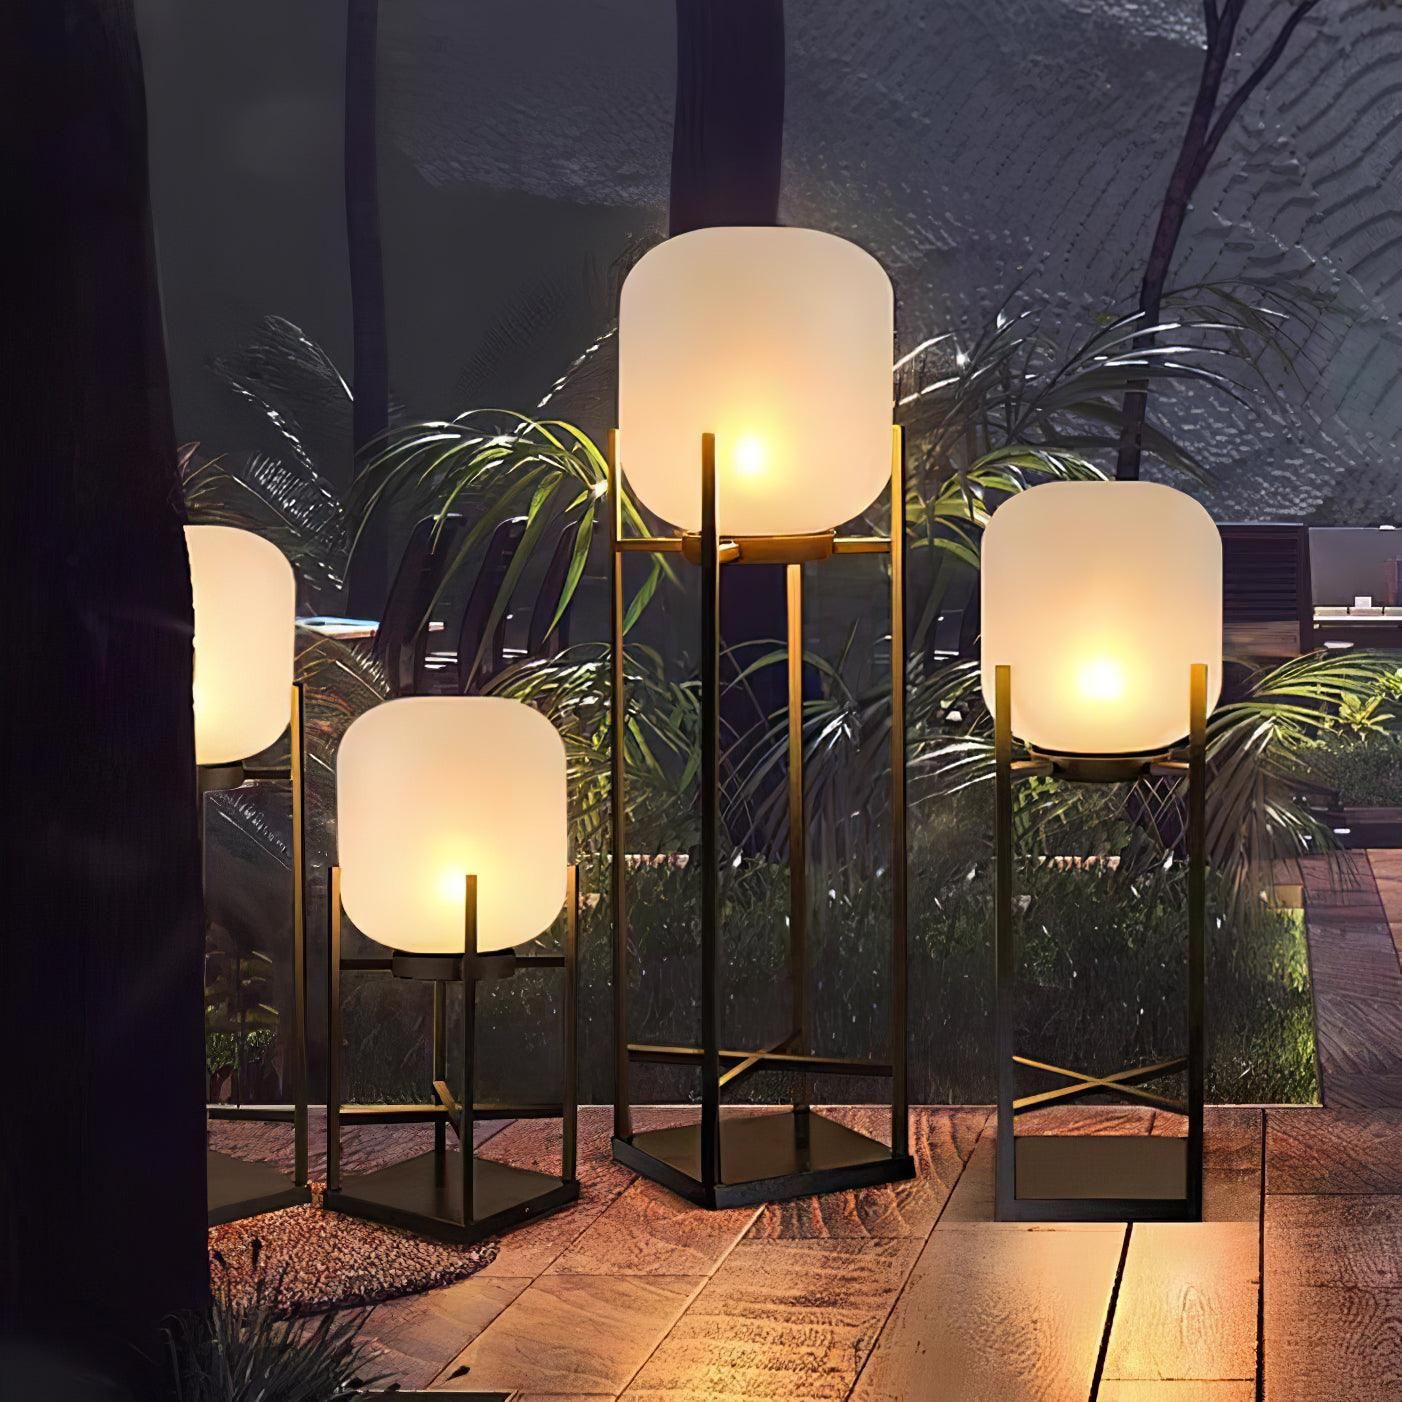 Outdoor Lantern Lamp : Illuminate Your Outdoors with Stunning Lantern Lamp Options